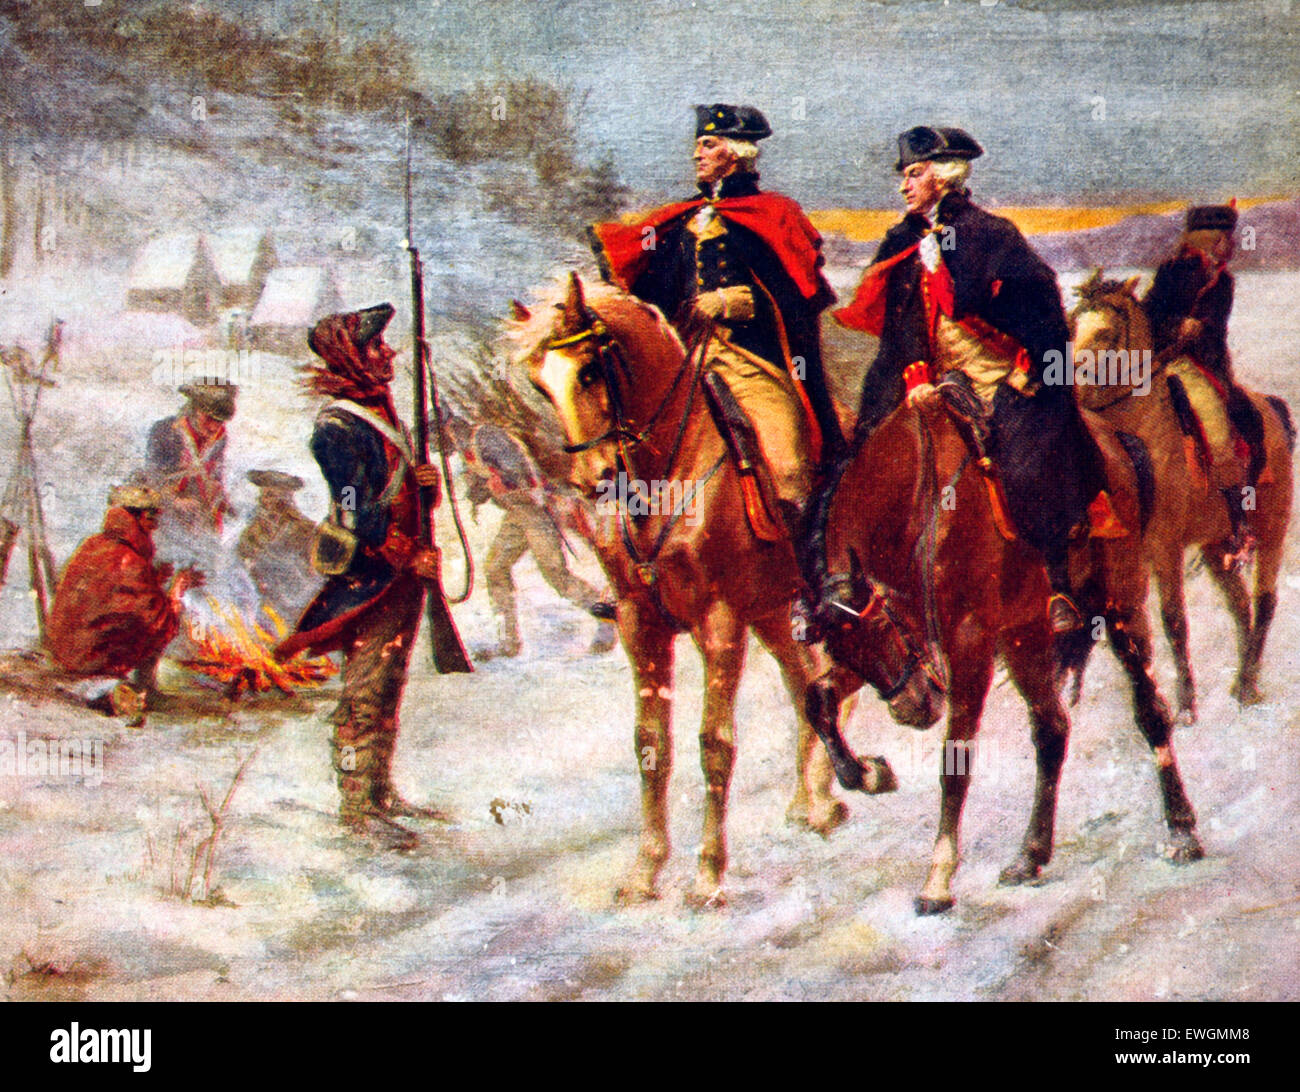 General George Washington und Marquis de Lafayette in Valley Forge, Pennsylvania, circa 1778. Amerikanischer revolutionärer Krieg Stockfoto